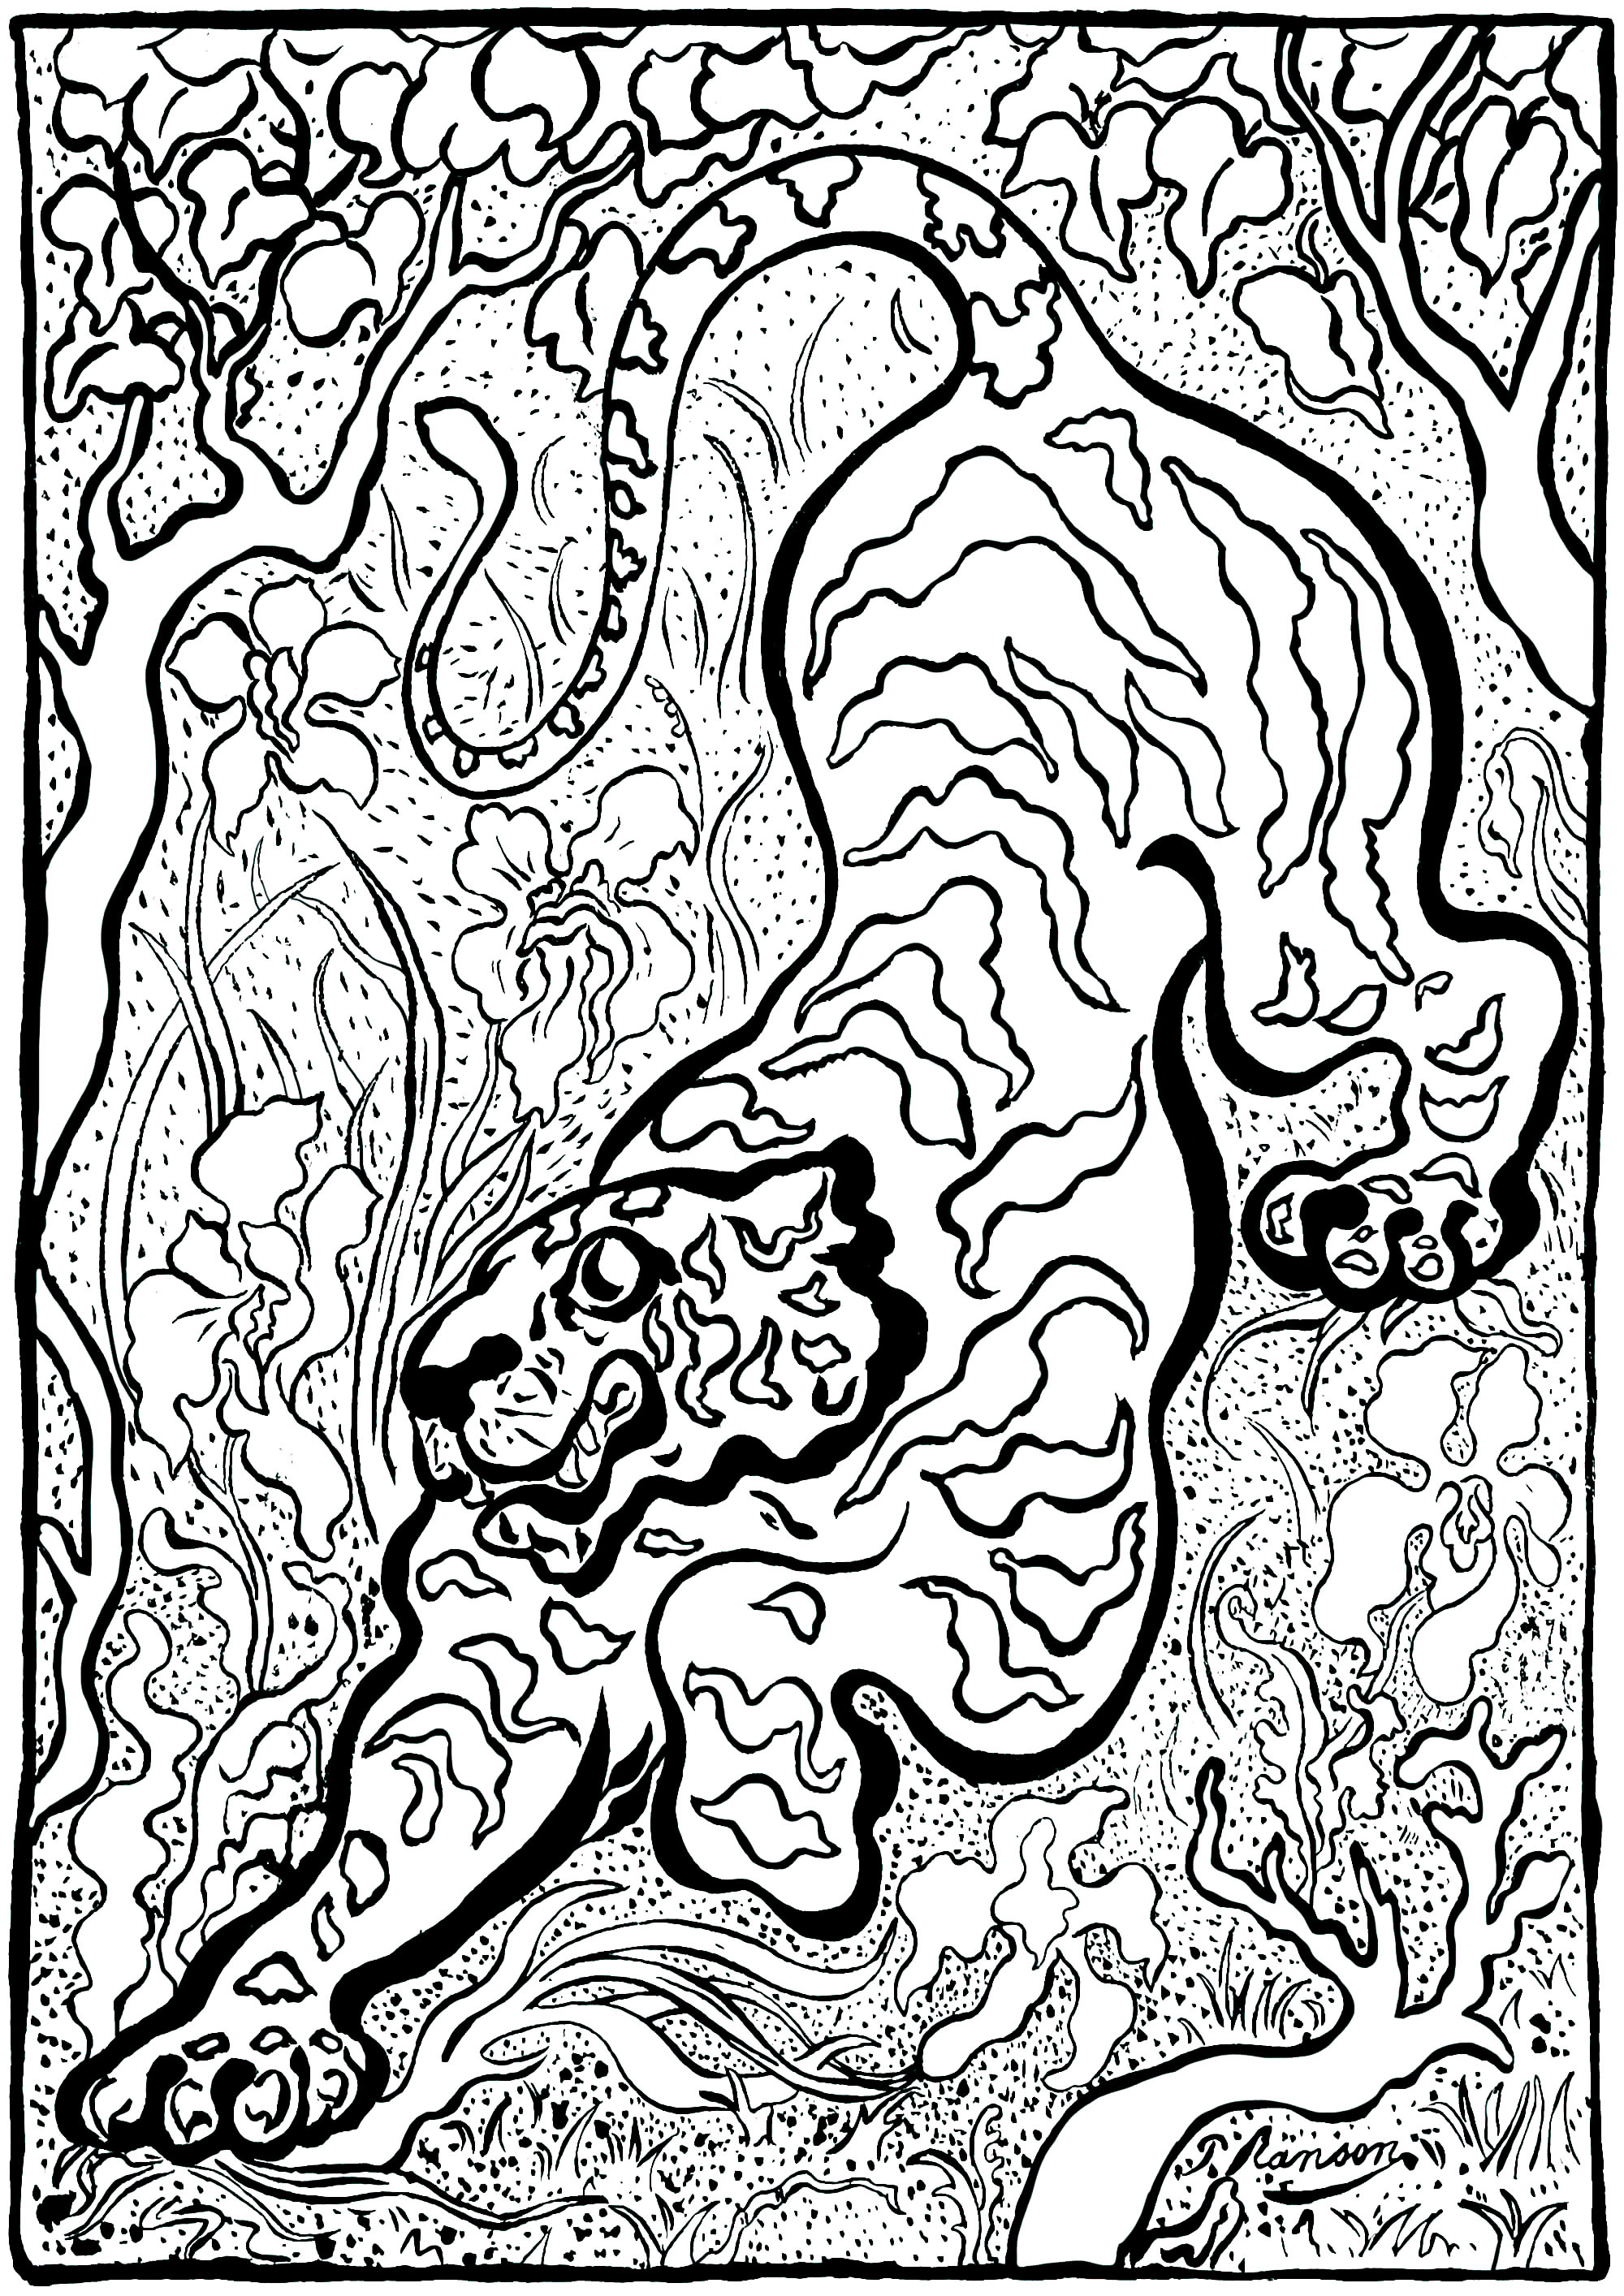 Coloriage créé à partir de 'Tigre dans les jungles' par Paul-Élie Ranson (1883) - Version 2 (simple). Paul-Élie Ranson, qui appartient au groupe des Nabis, a développé un style original aux résonances symbolistes et ésotériques. Inscrit dans l'histoire du postimpressionnisme mais en rupture avec l'impressionnisme, le mouvement nabi prône un retour à l'imaginaire et à la subjectivité.